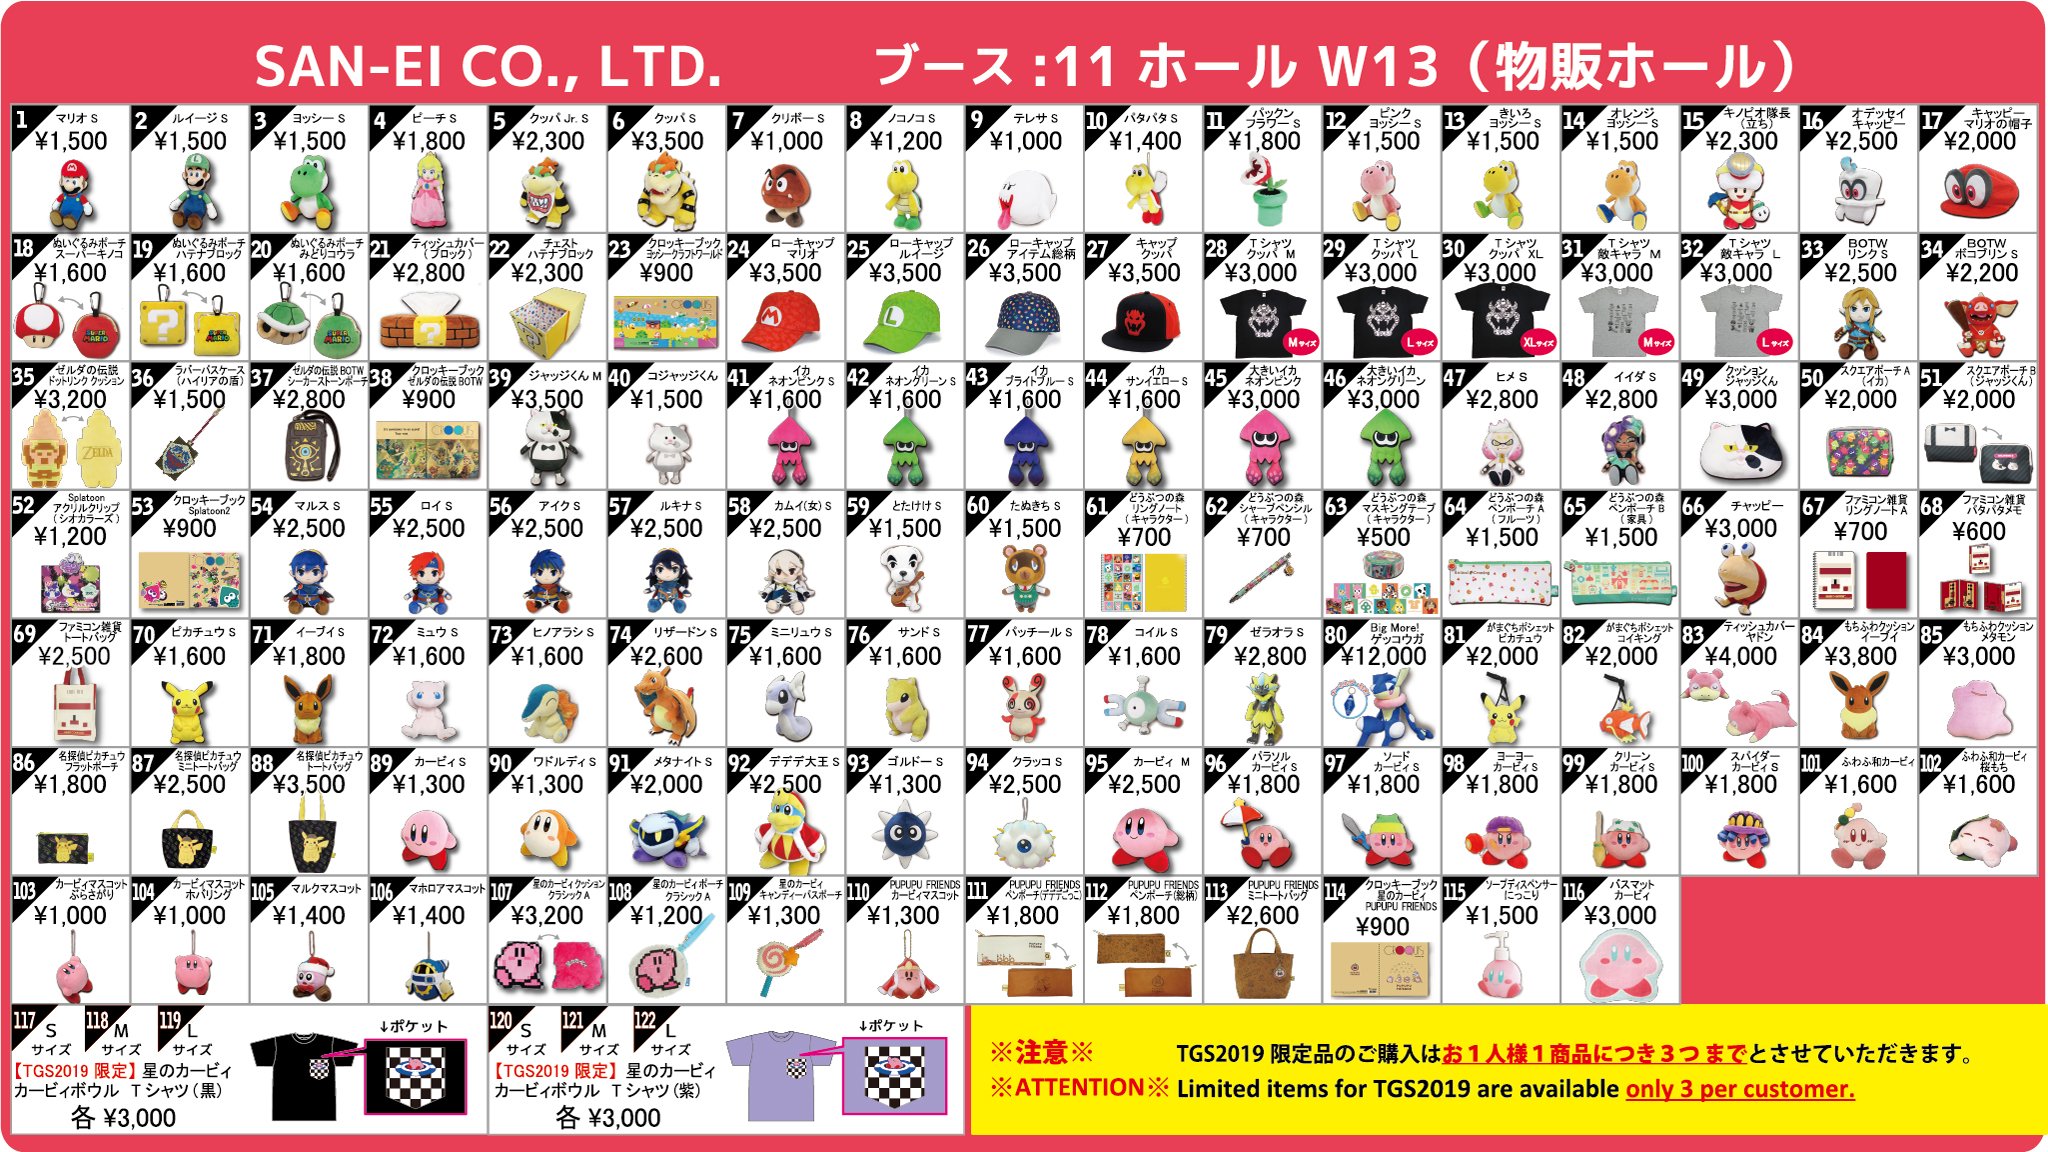 三英貿易が 東京ゲームショウ2019 で販売する商品のラインナップを公開